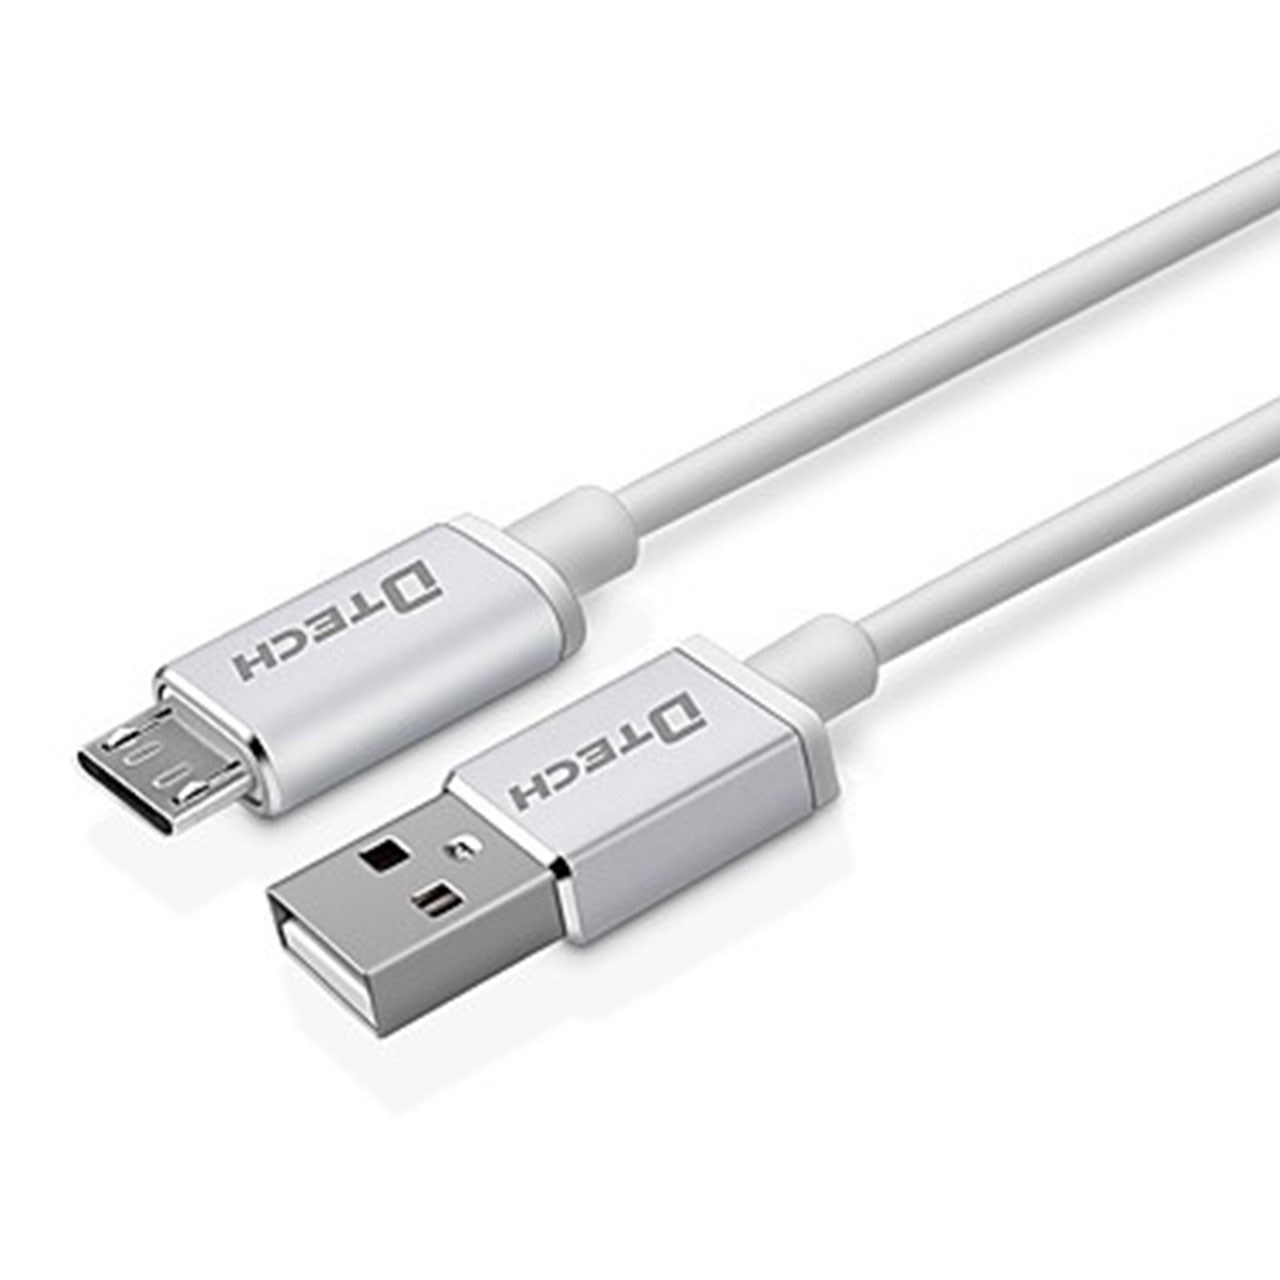 کابل تبدیل USB به Micro-USB دیتک مدل DT-T0013 به طول 3 متر